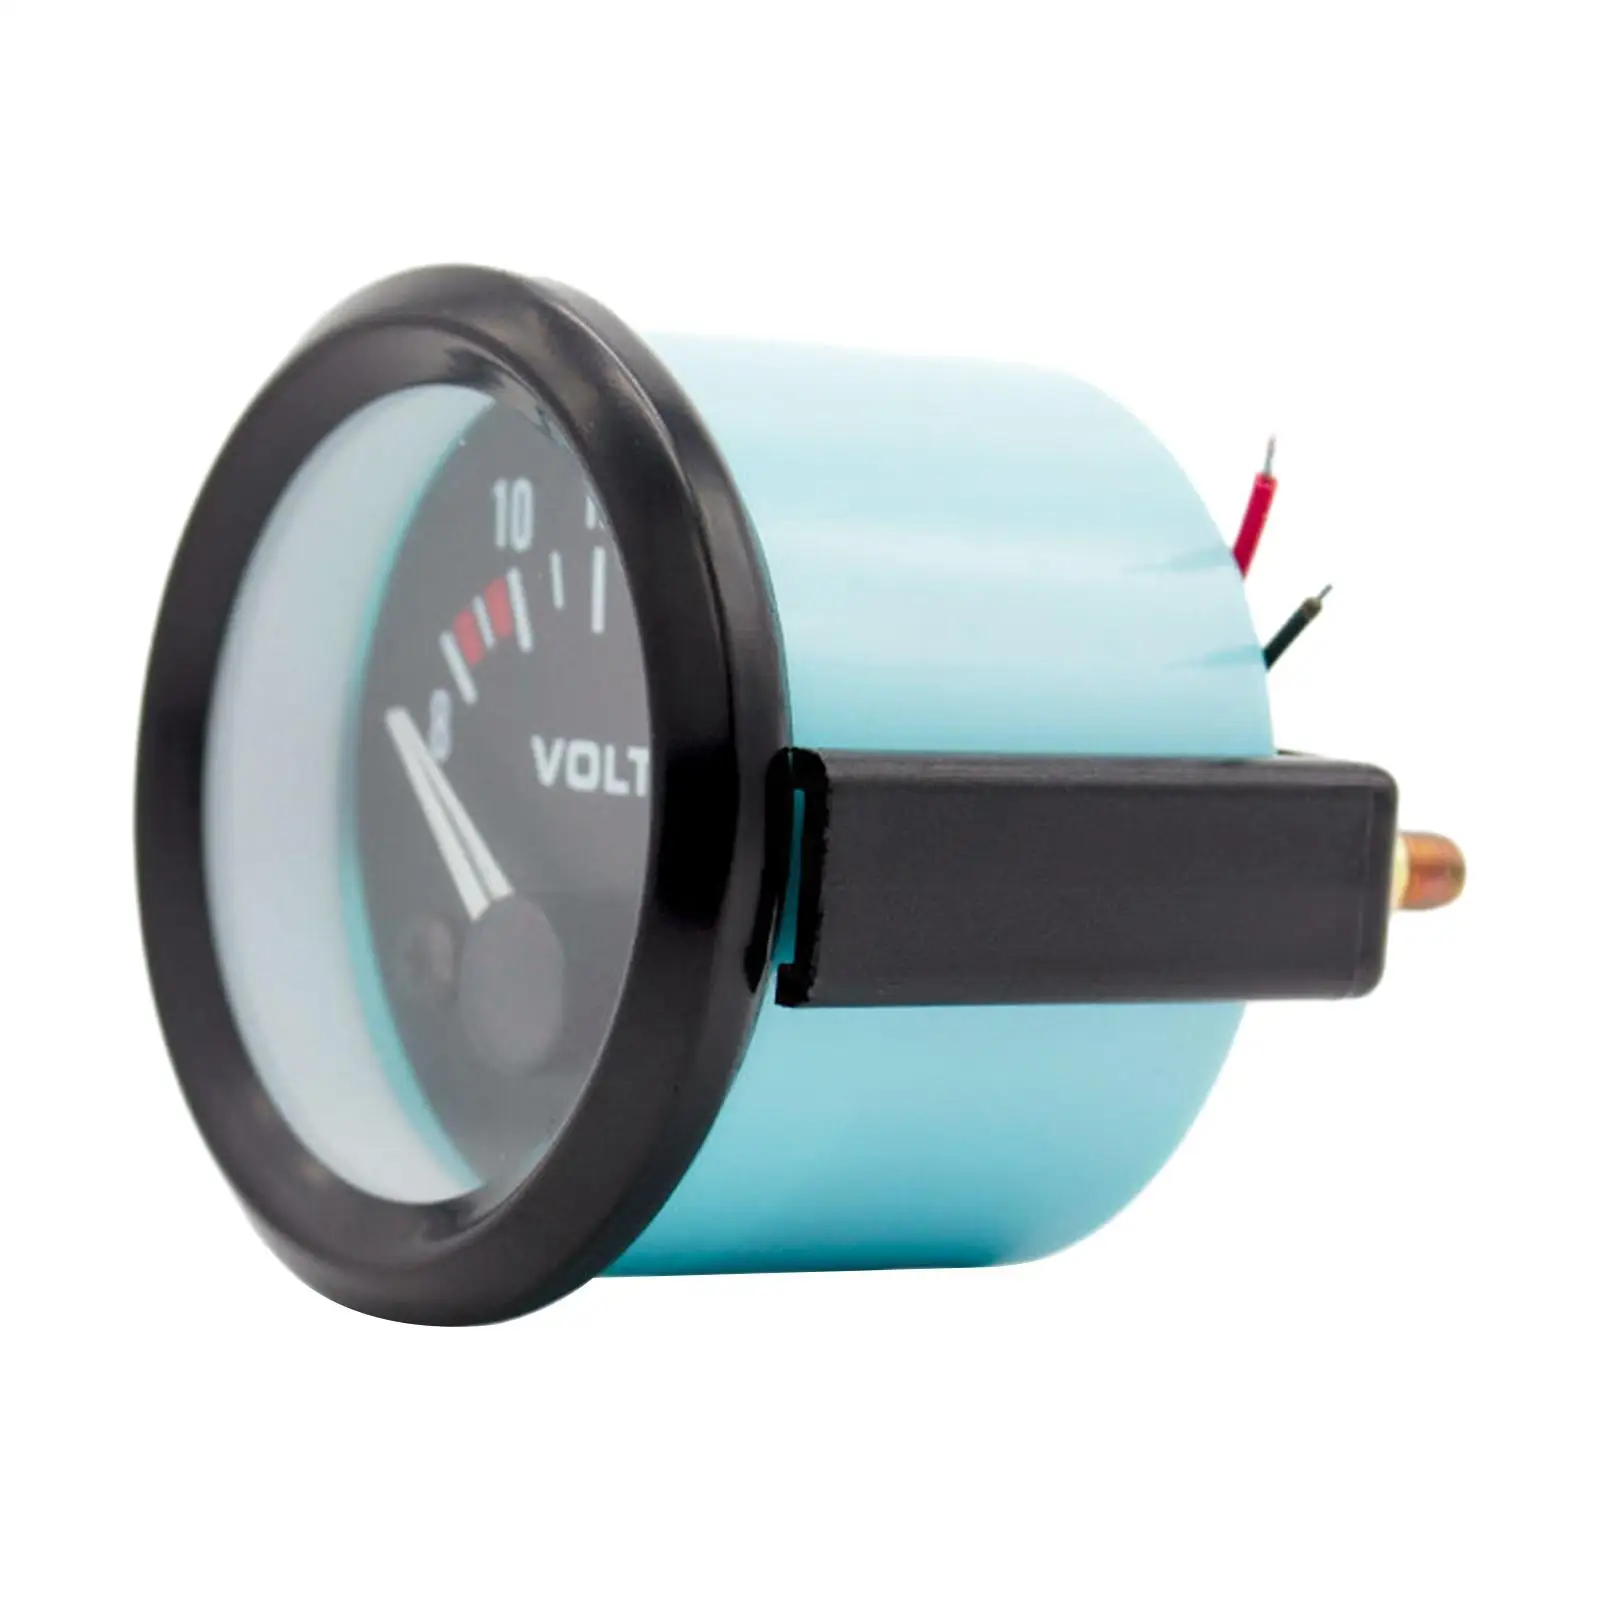 Electrical Car Voltmeter Diameter 2